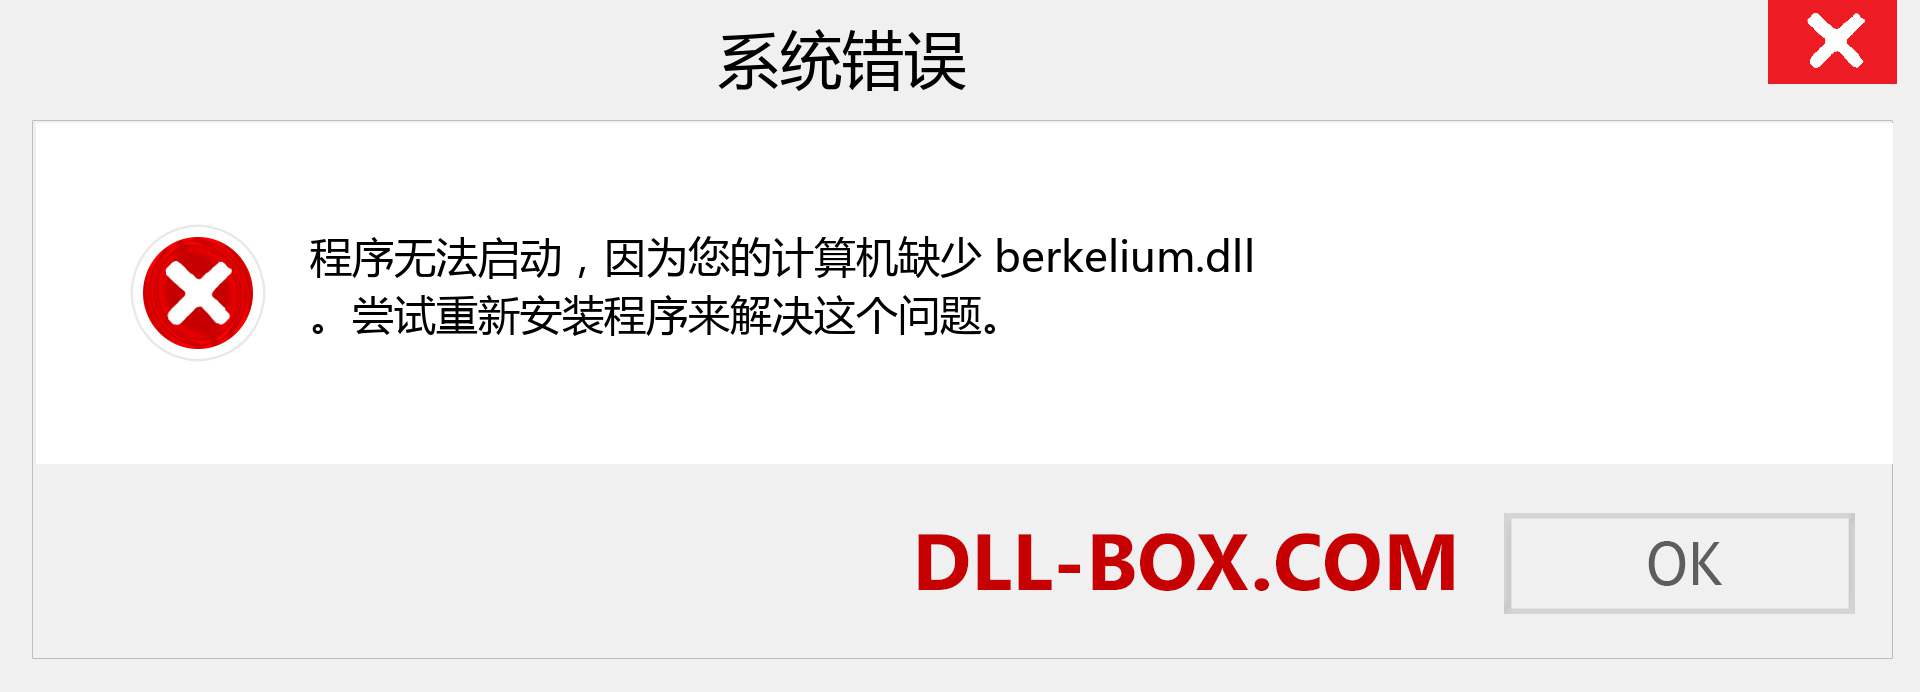 berkelium.dll 文件丢失？。 适用于 Windows 7、8、10 的下载 - 修复 Windows、照片、图像上的 berkelium dll 丢失错误